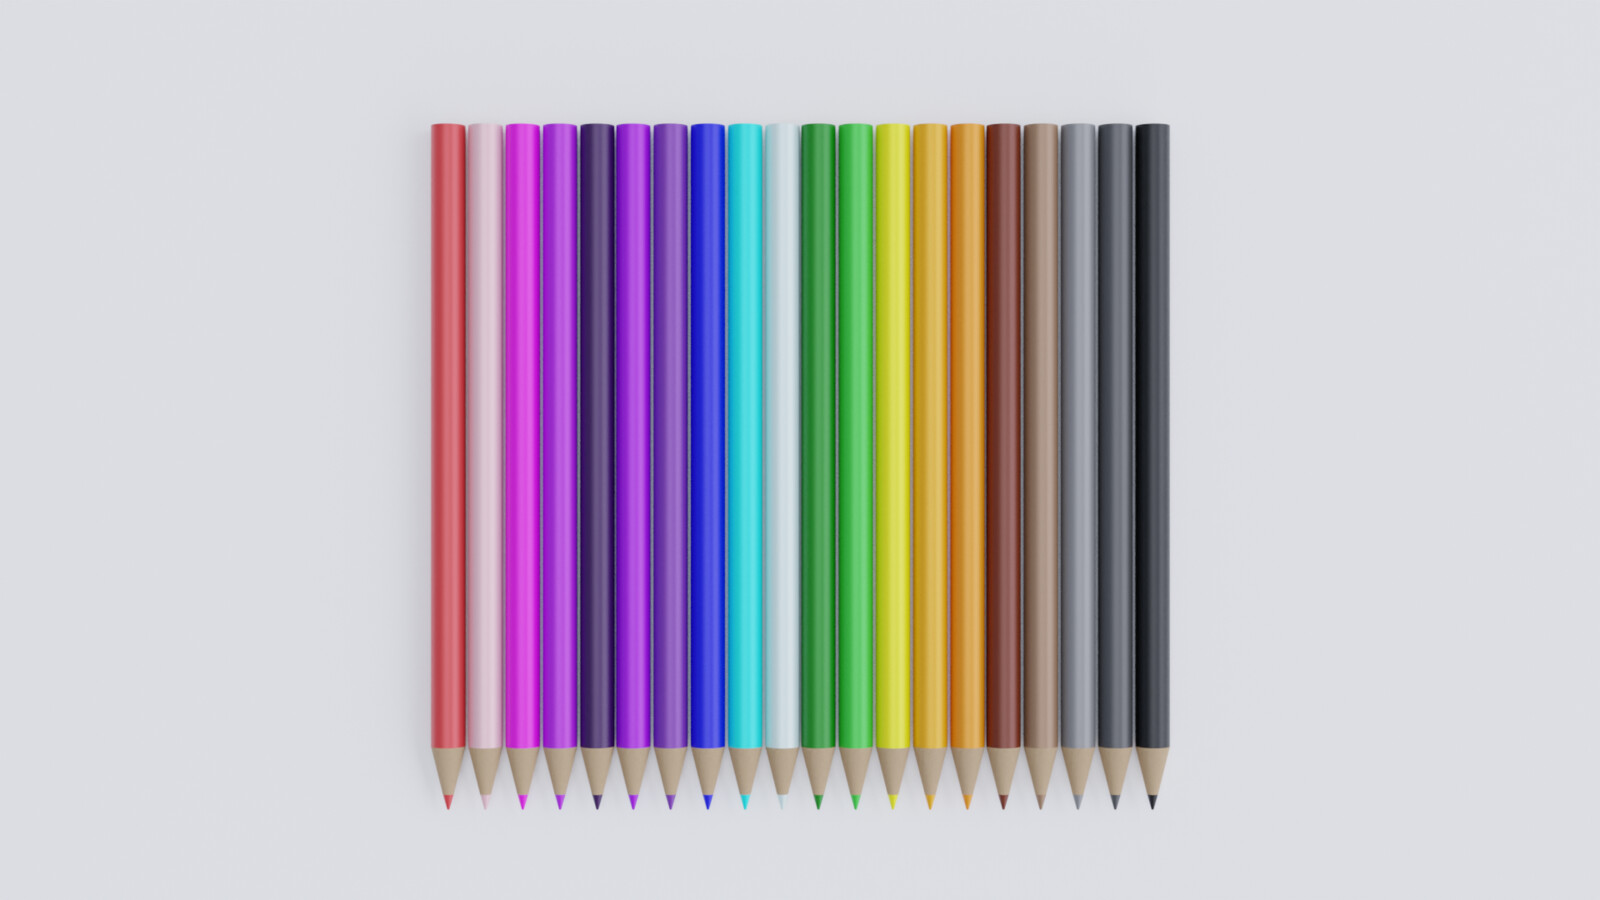 Wooden Pencil Crayon render 4